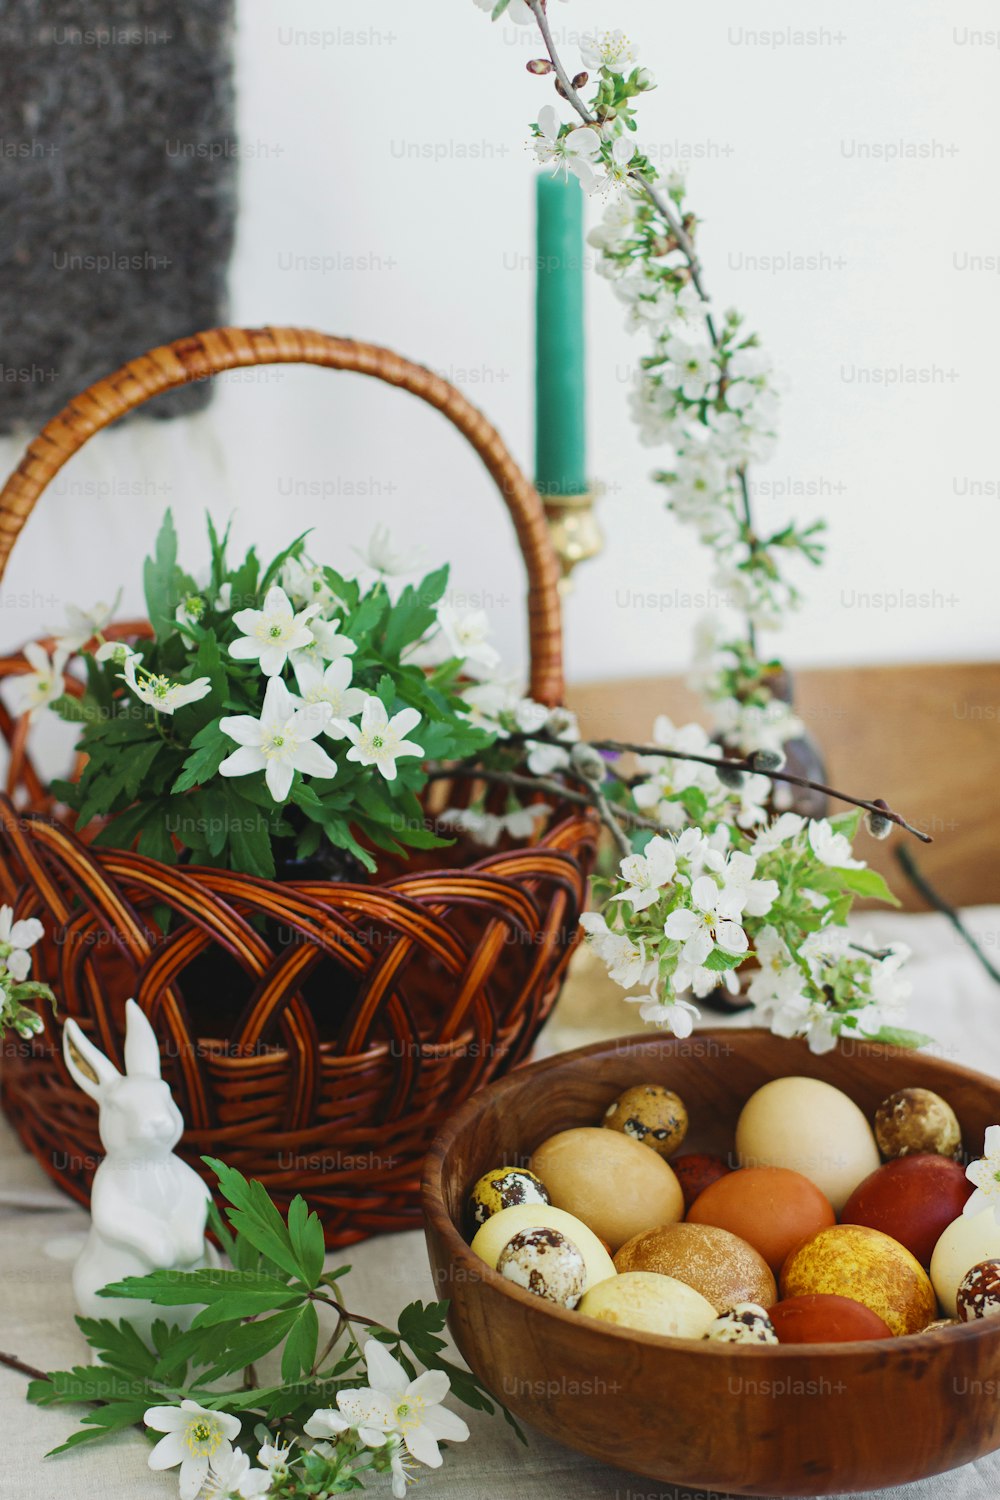 토끼 인형, 고리 버들 바구니, 촛불, 봄에 피는 꽃이 있는 소박한 테이블에 나무 그릇에 담긴 세련된 부활절 달걀. 행복한 부활절! 노란색과 빨간색의 자연 염색 계란